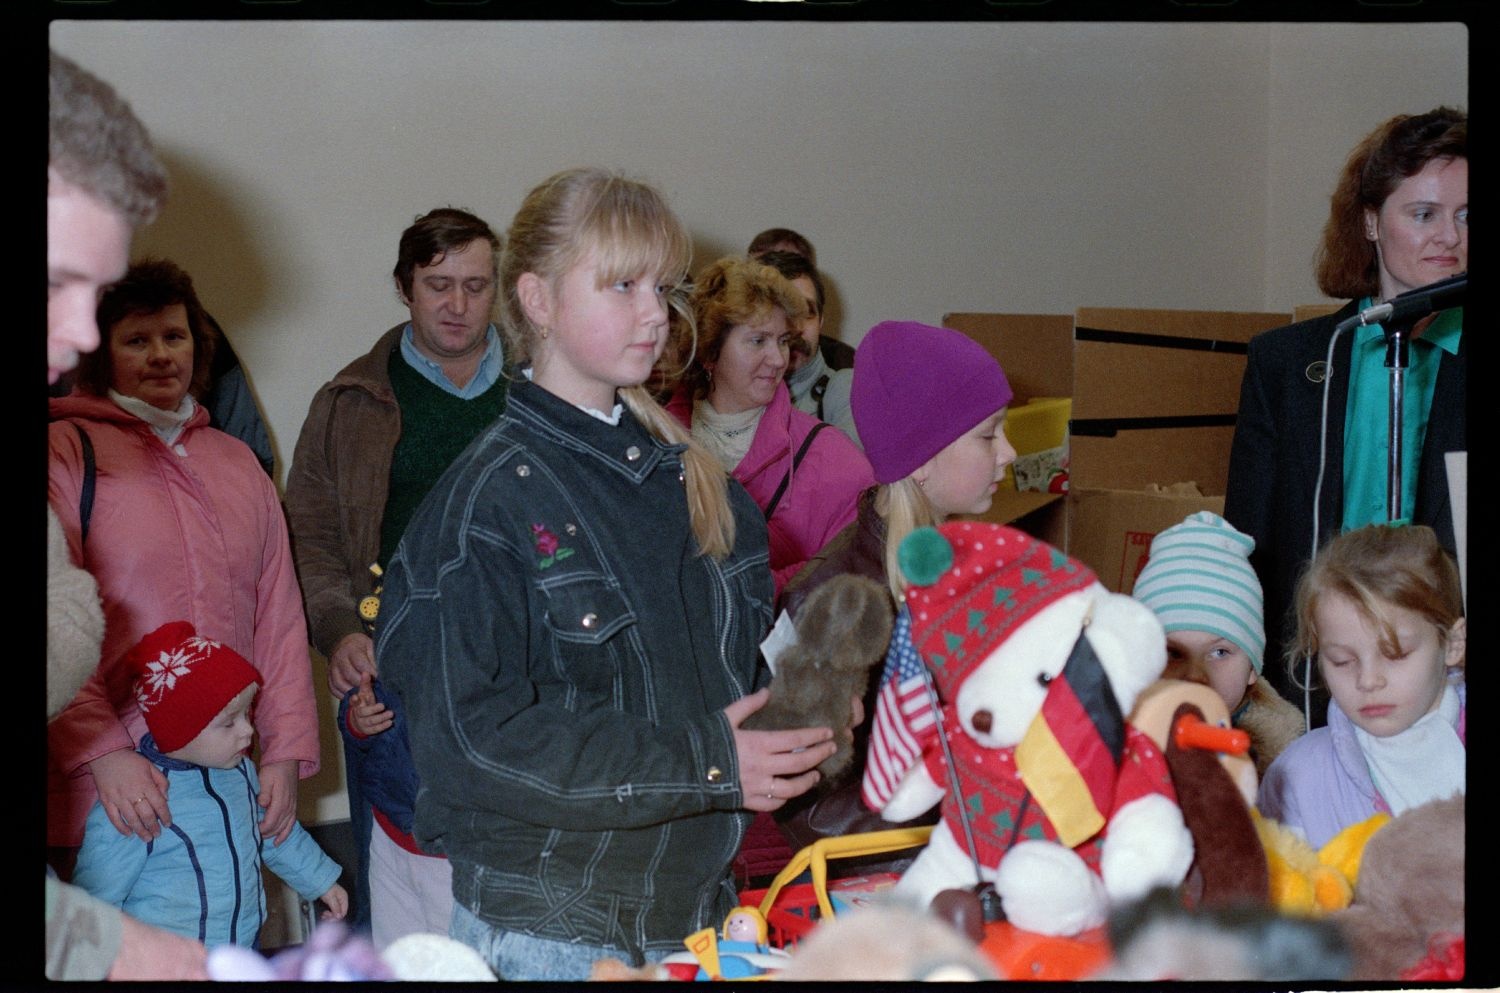 Fotografie: Übergabe von Spielzeugspenden für Kinder aus der DDR im Notaufnahmelager Berlin-Marienfelde (AlliiertenMuseum/U.S. Army Photograph Public Domain Mark)